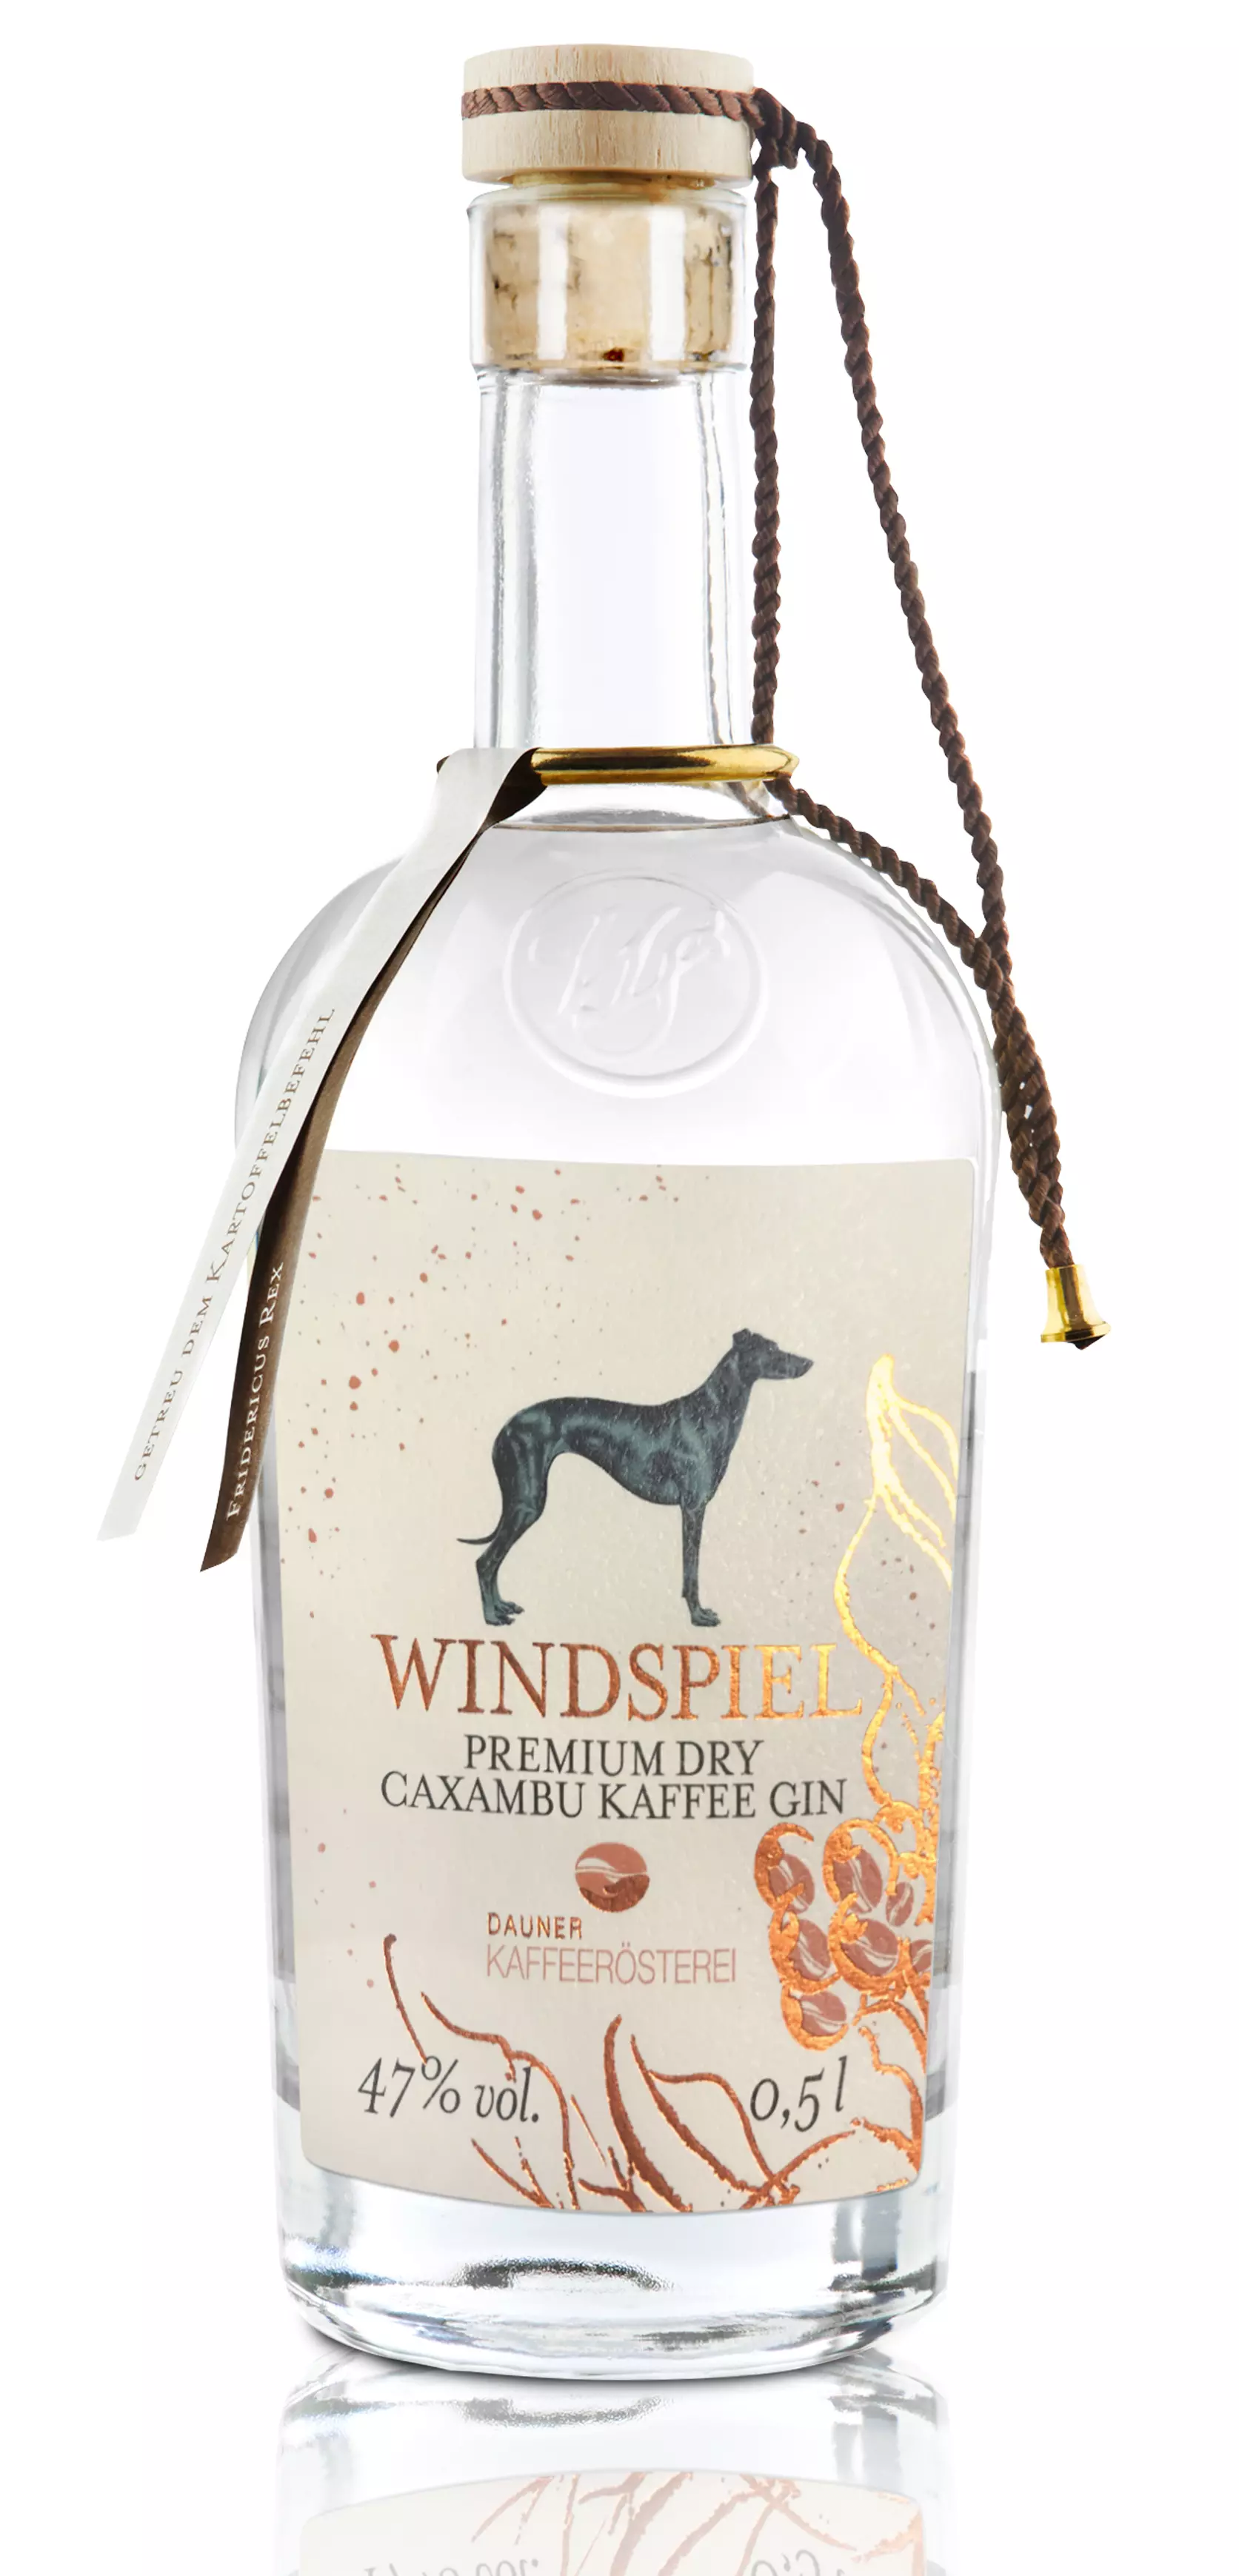 Windspiel Premium Dry Caxambu Kaffee Gin 47% 0,5l